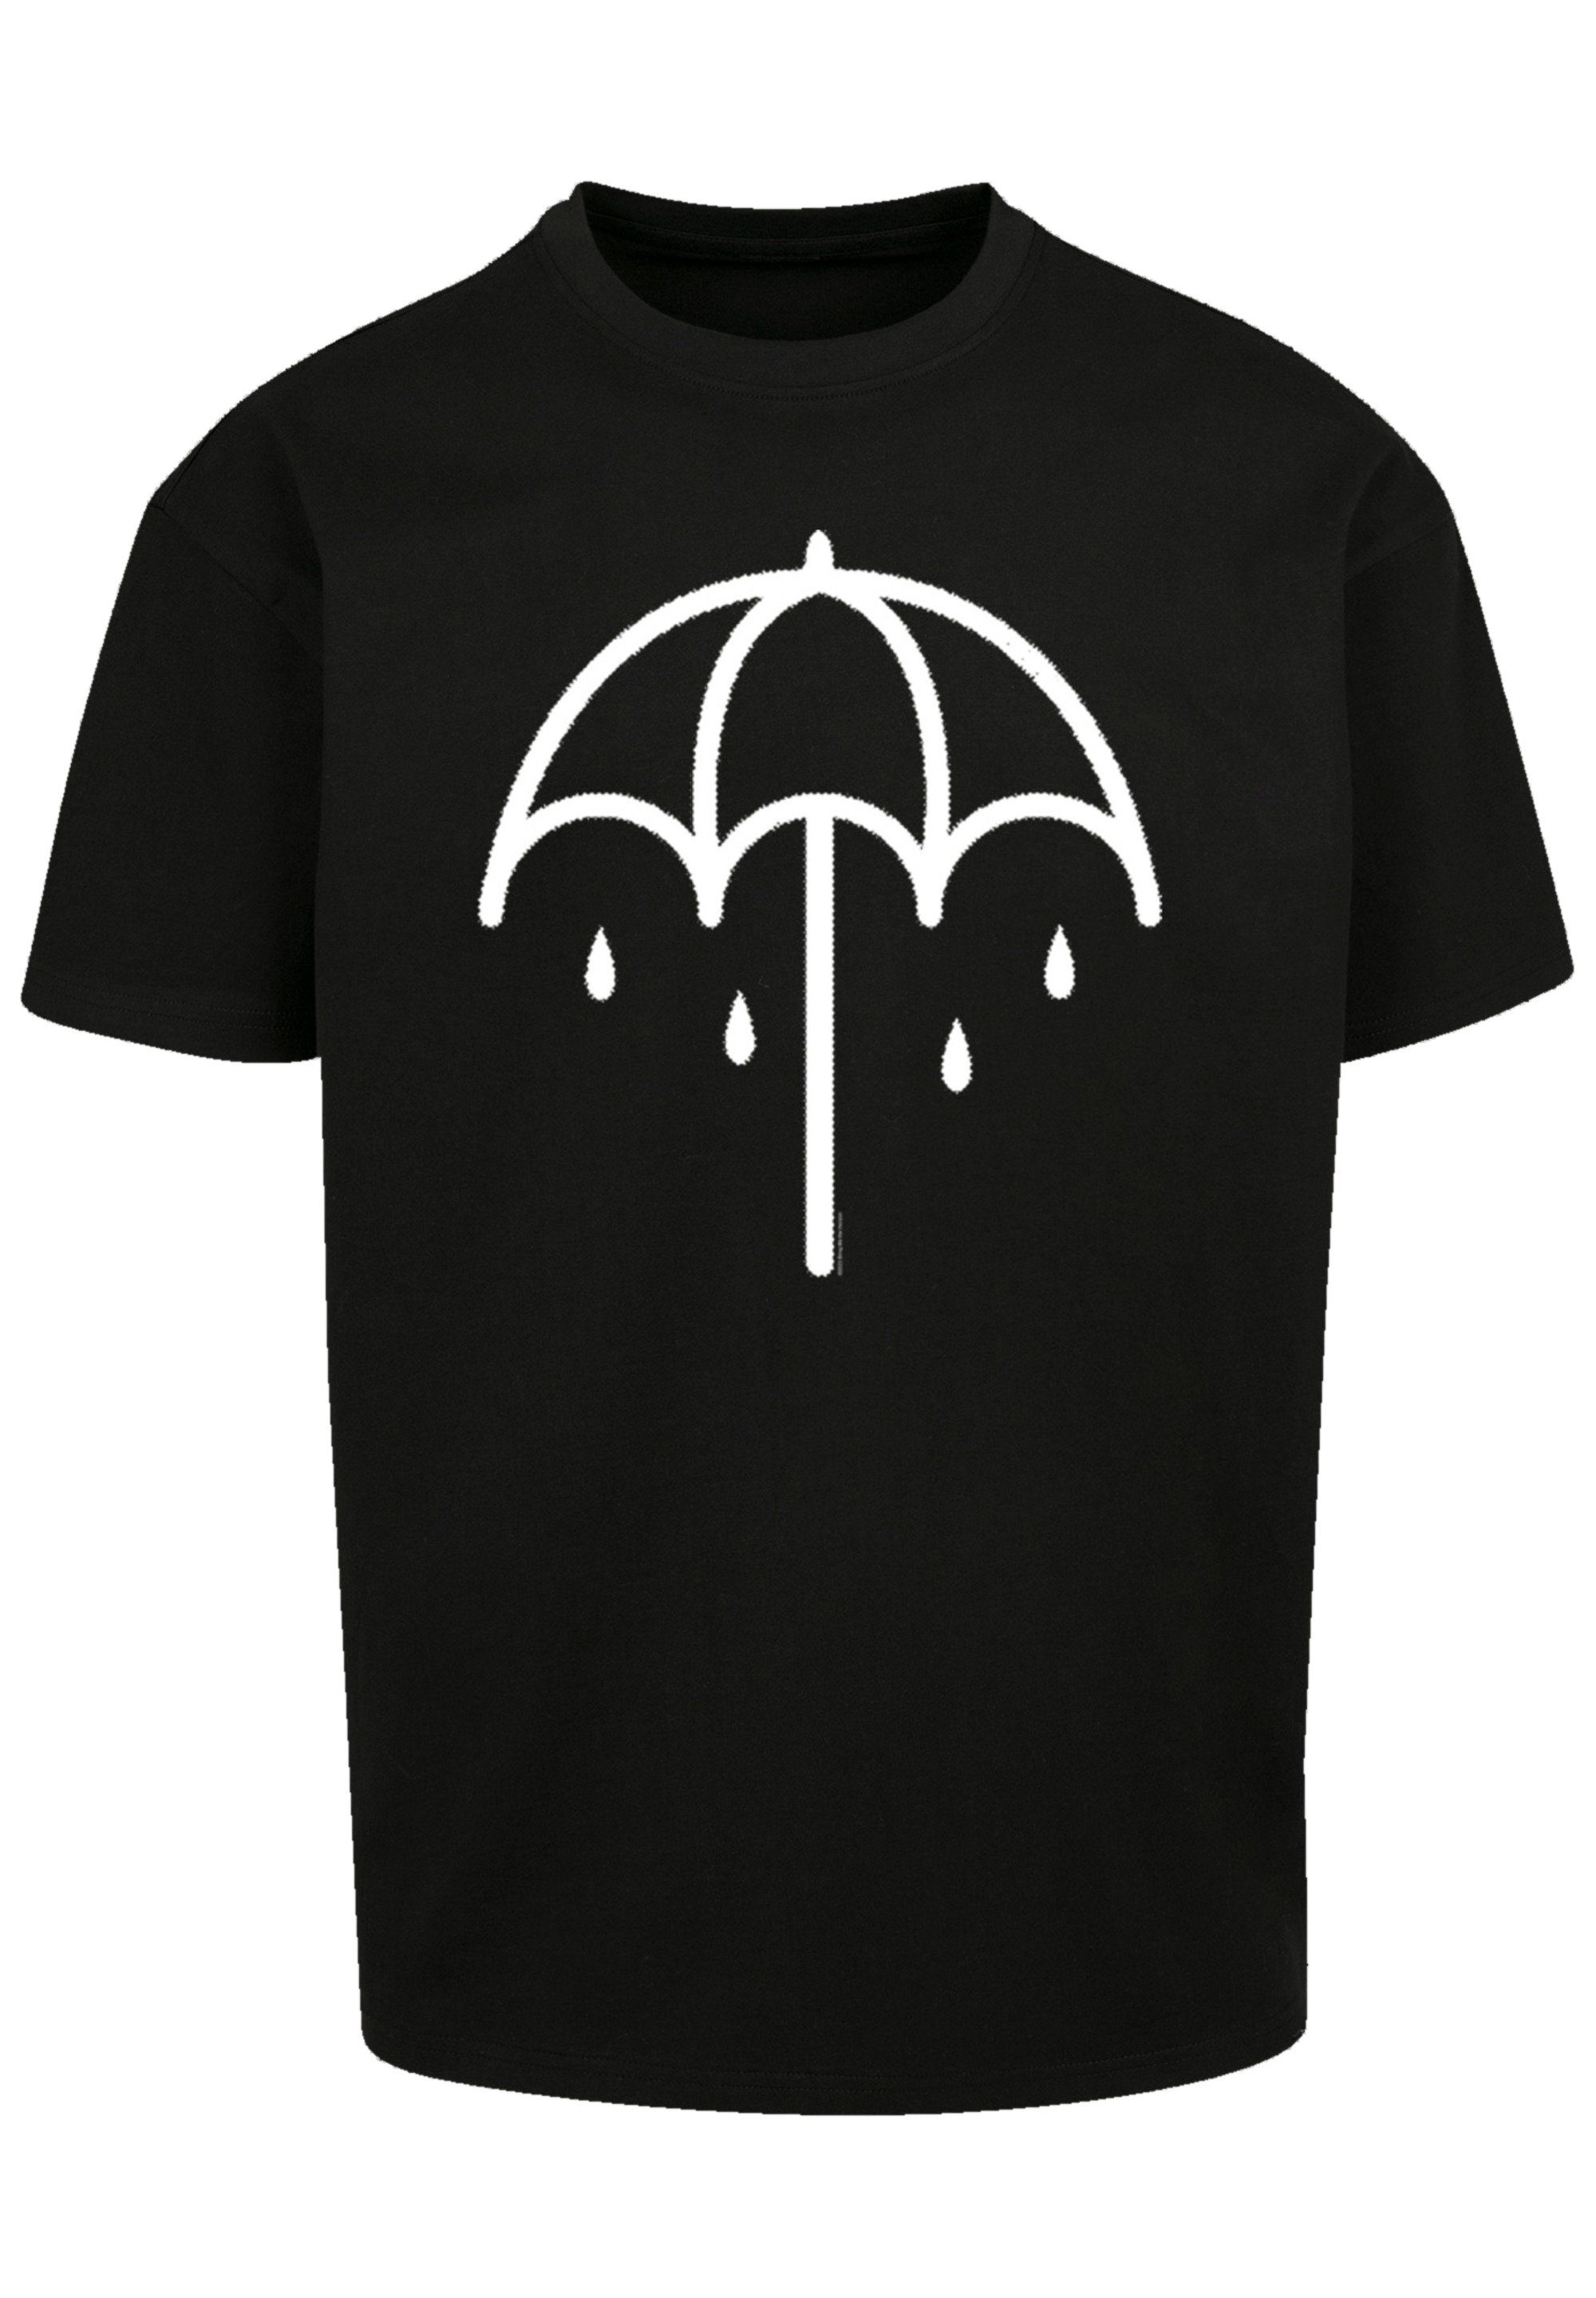 F4NT4STIC Qualität, Rock-Musik, schwarz DARK Umbrella BMTH Premium T-Shirt Band Metal Band 2